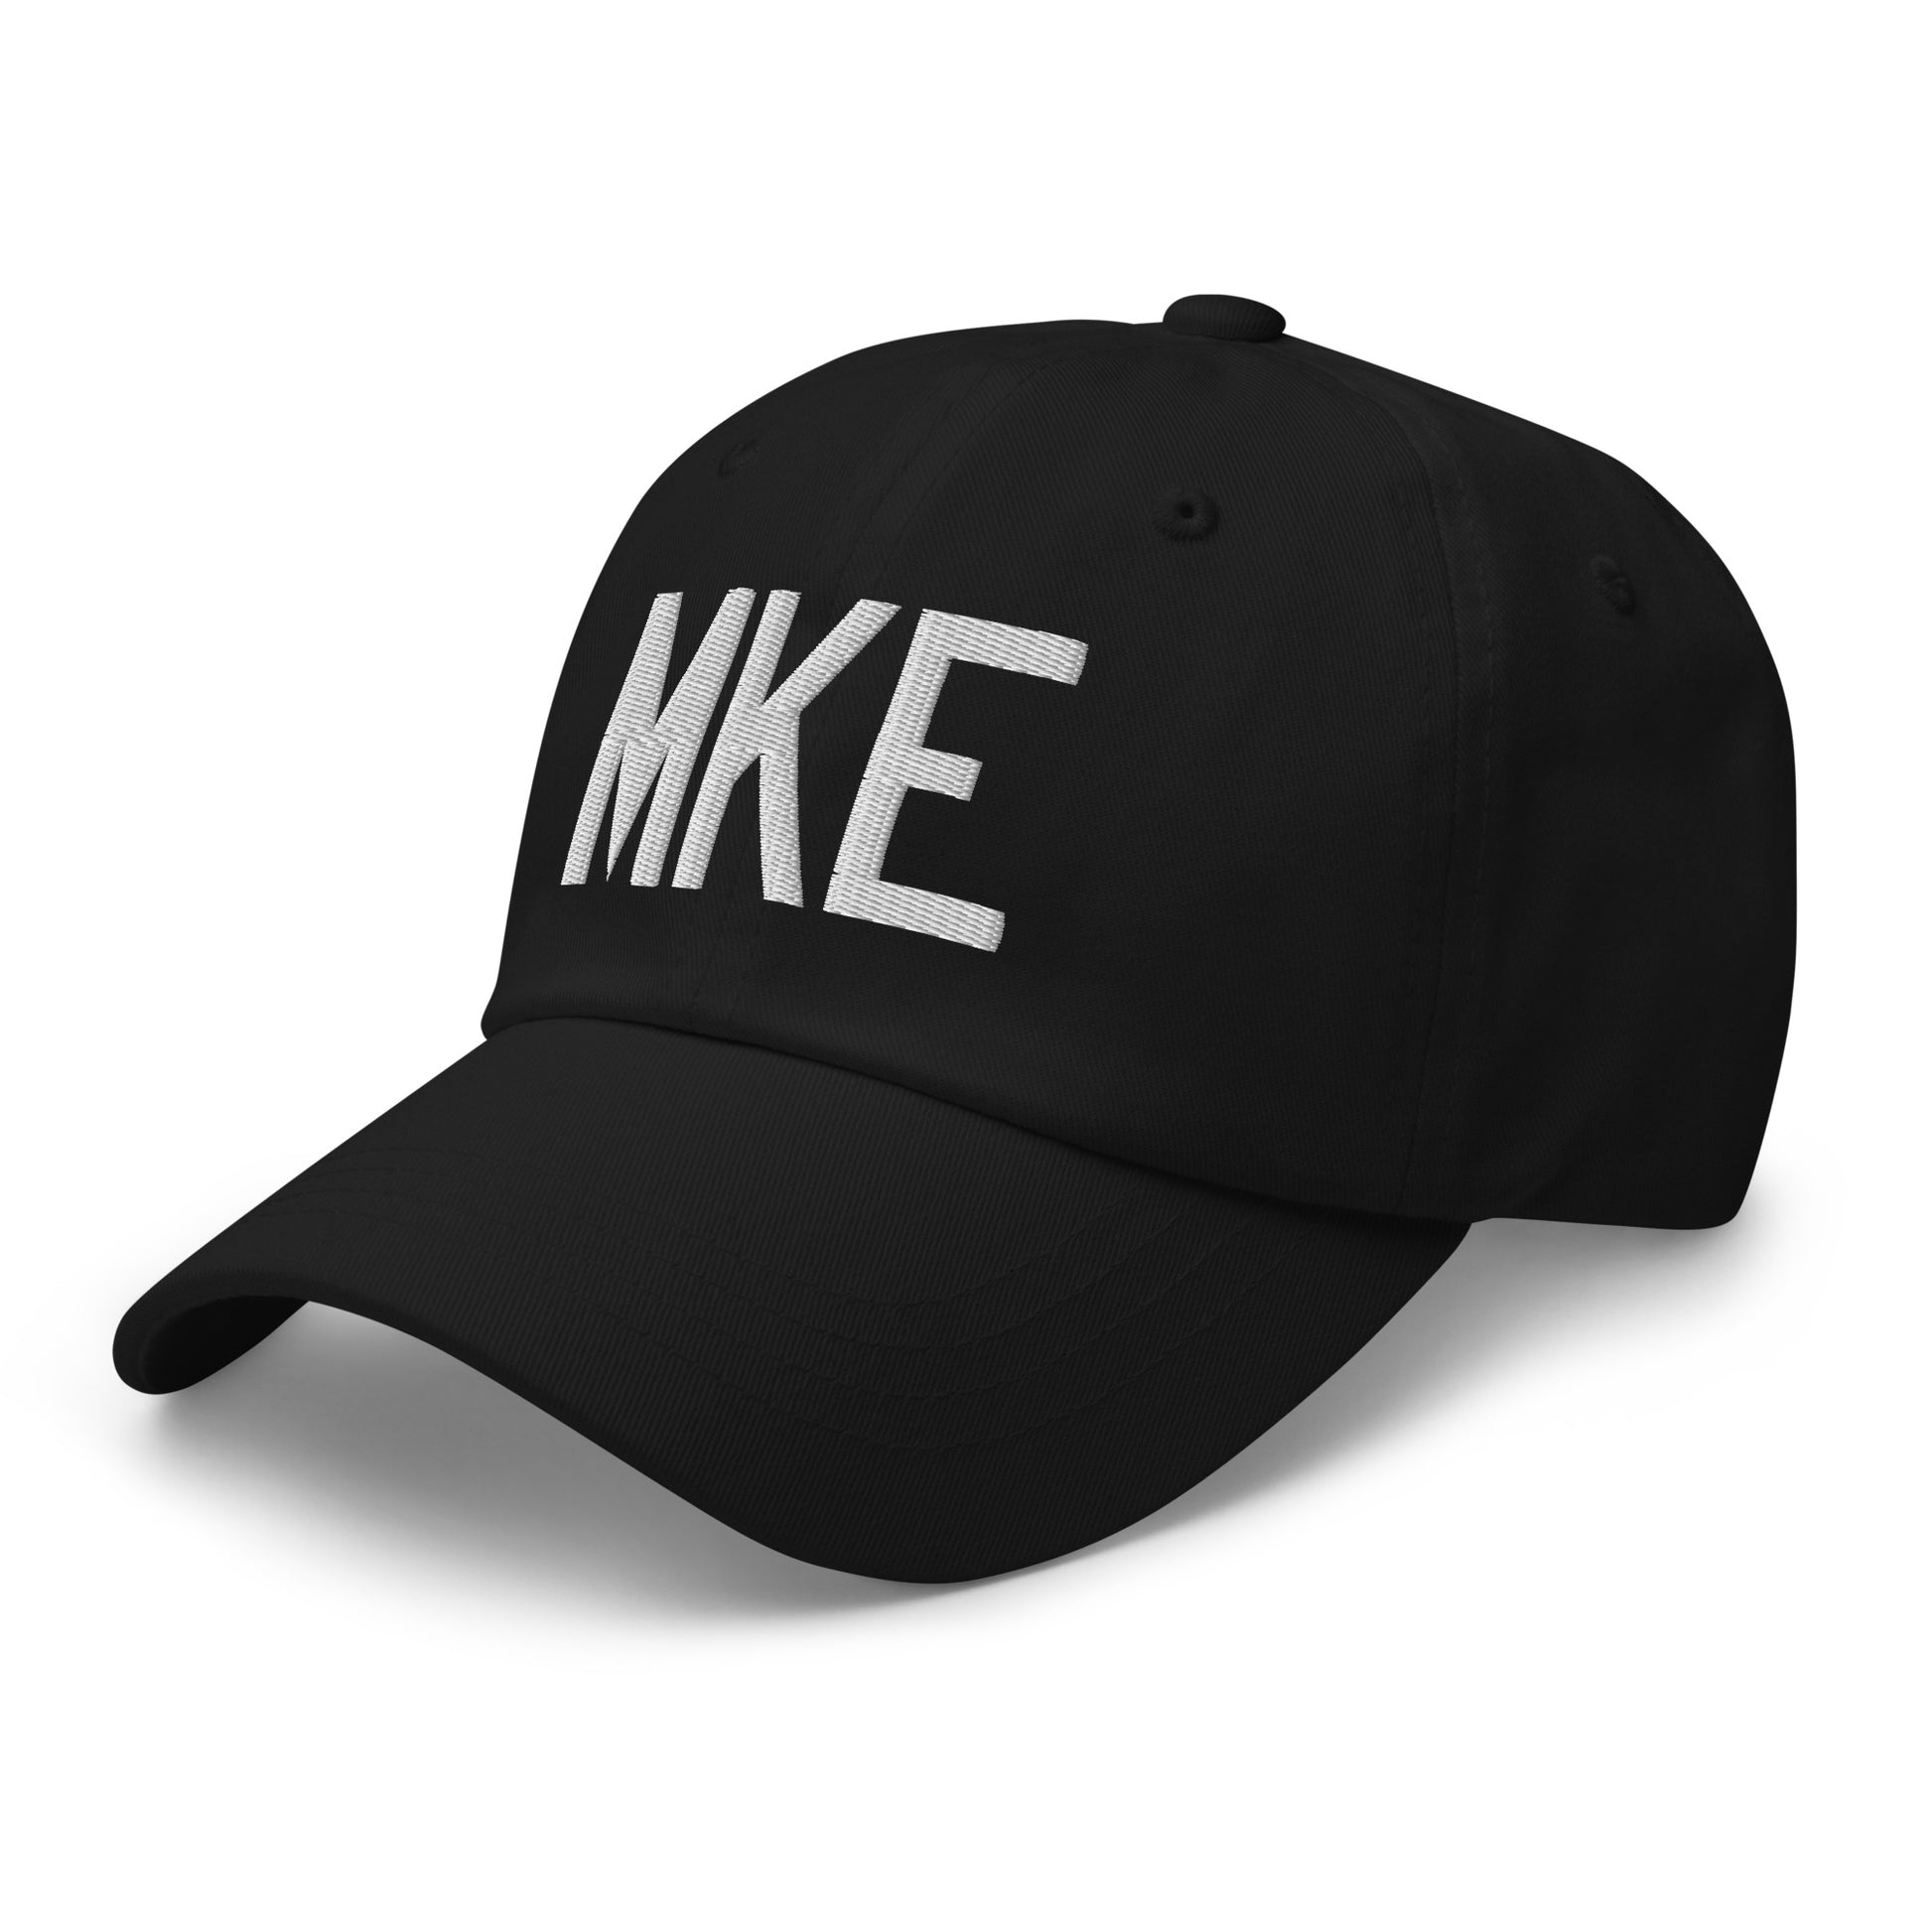 Airport Code Baseball Cap - White • MKE Milwaukee • YHM Designs - Image 01